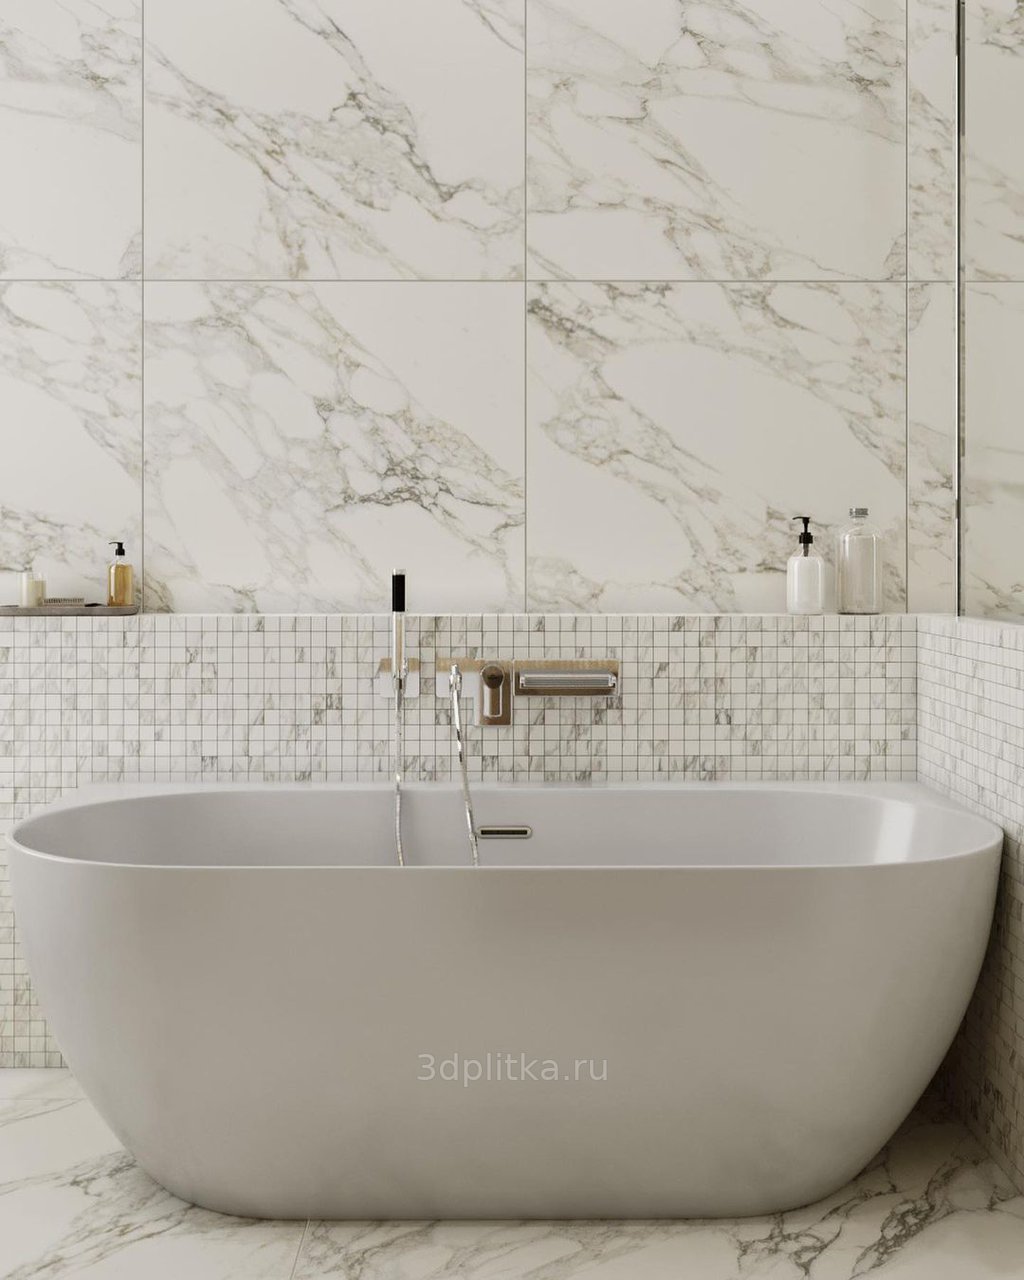 Отделка ванной комнаты черной плиткой: дизайн и лучшие цветовые сочетания с фото-примерами